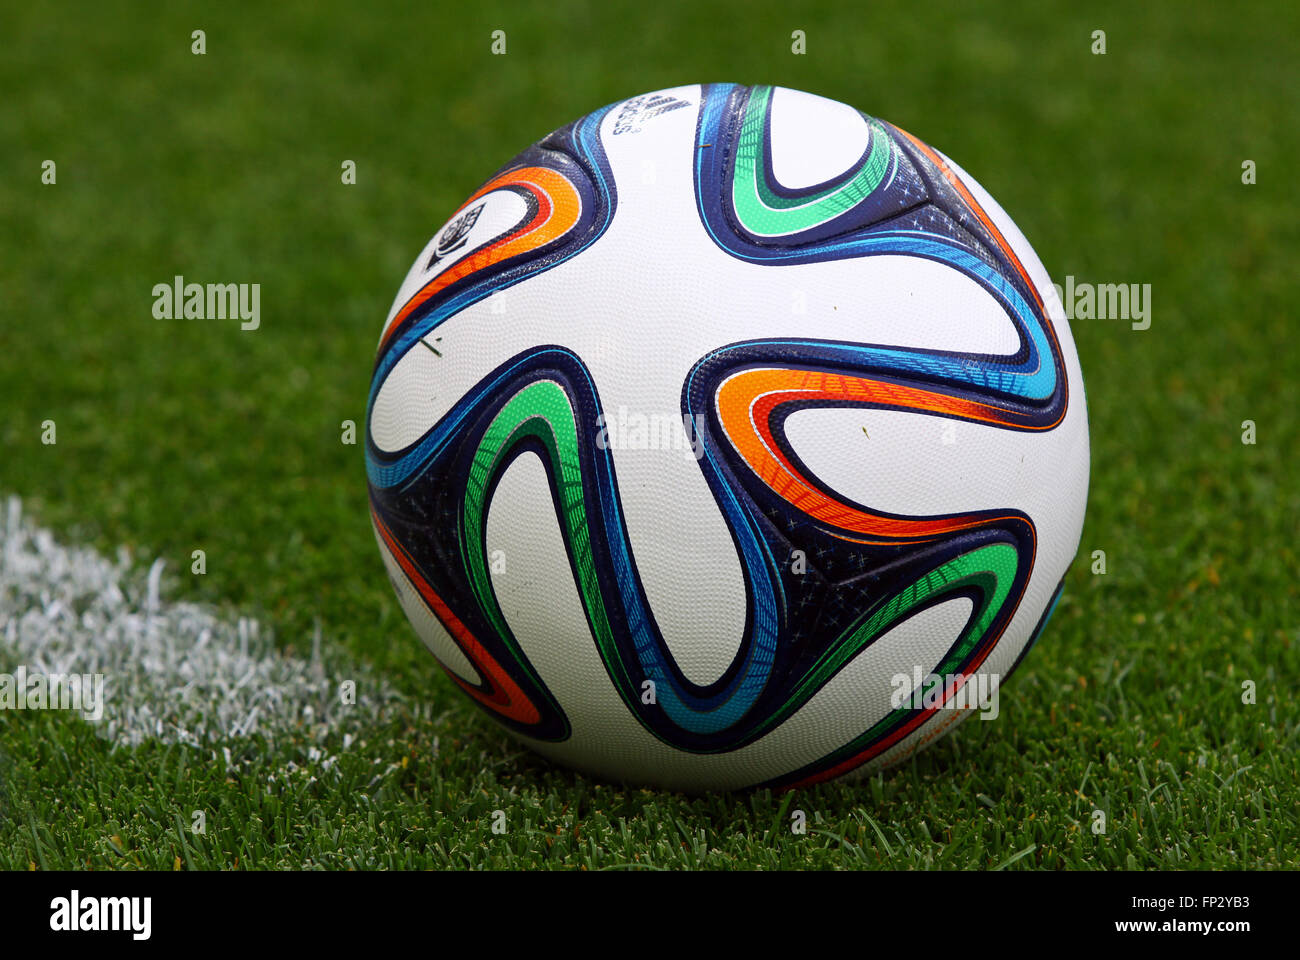 Kiew, UKRAINE - 18. Mai 2014: Nahaufnahme offizielle FIFA WM 2014 Ball (Brazuca) auf dem Rasen während Ukraine Meisterschaftsspiel Stockfoto